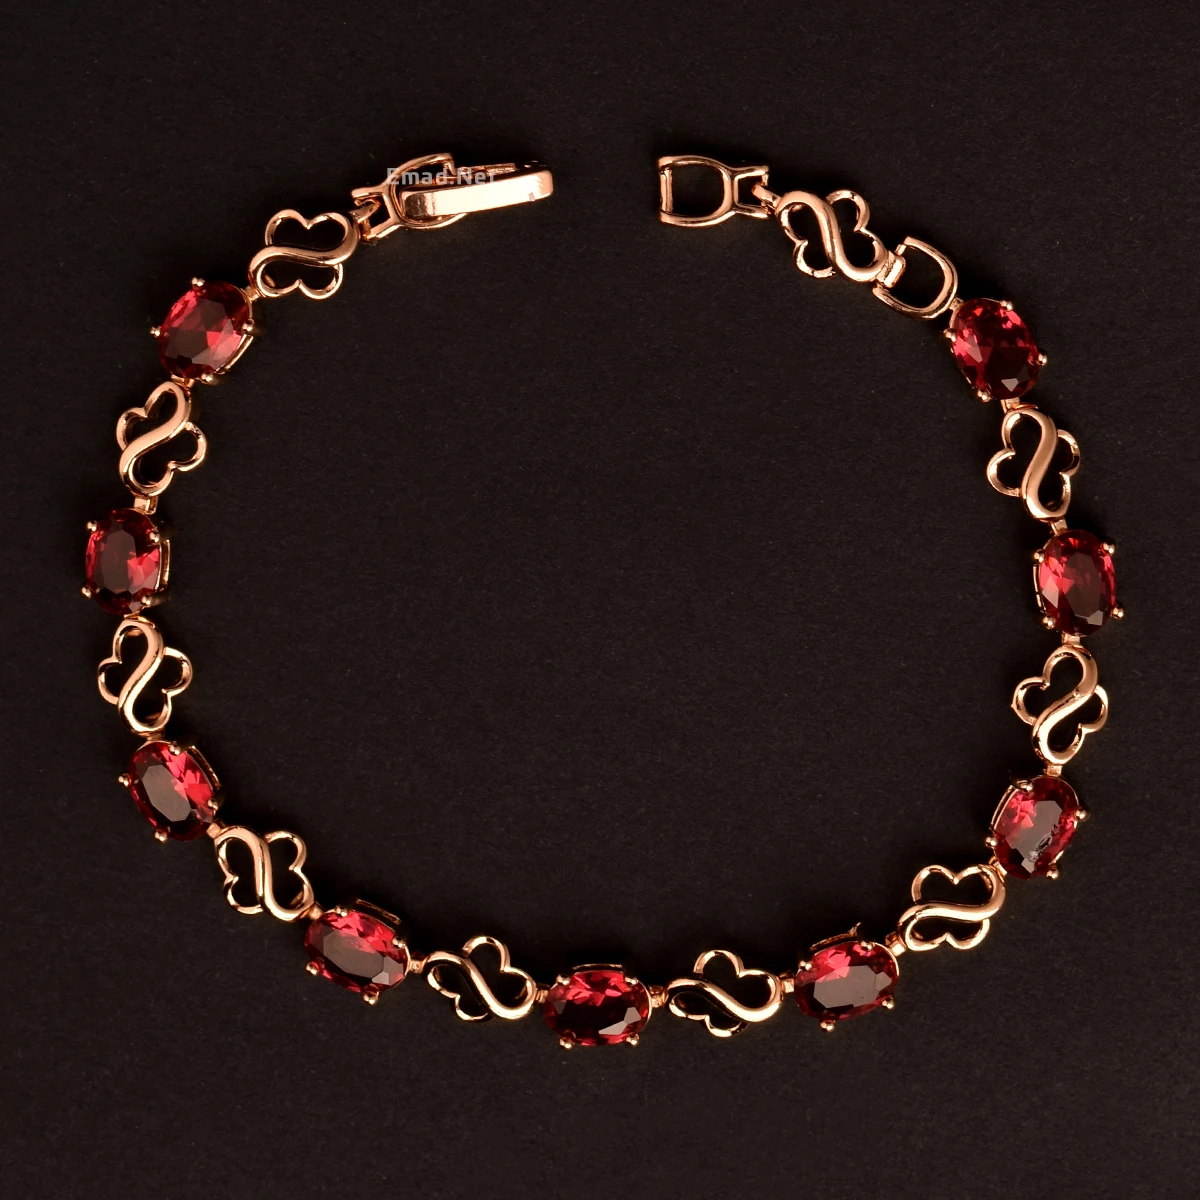 دستبند زنانه ژوپينگ با سنگ قرمز زمردي کد 206